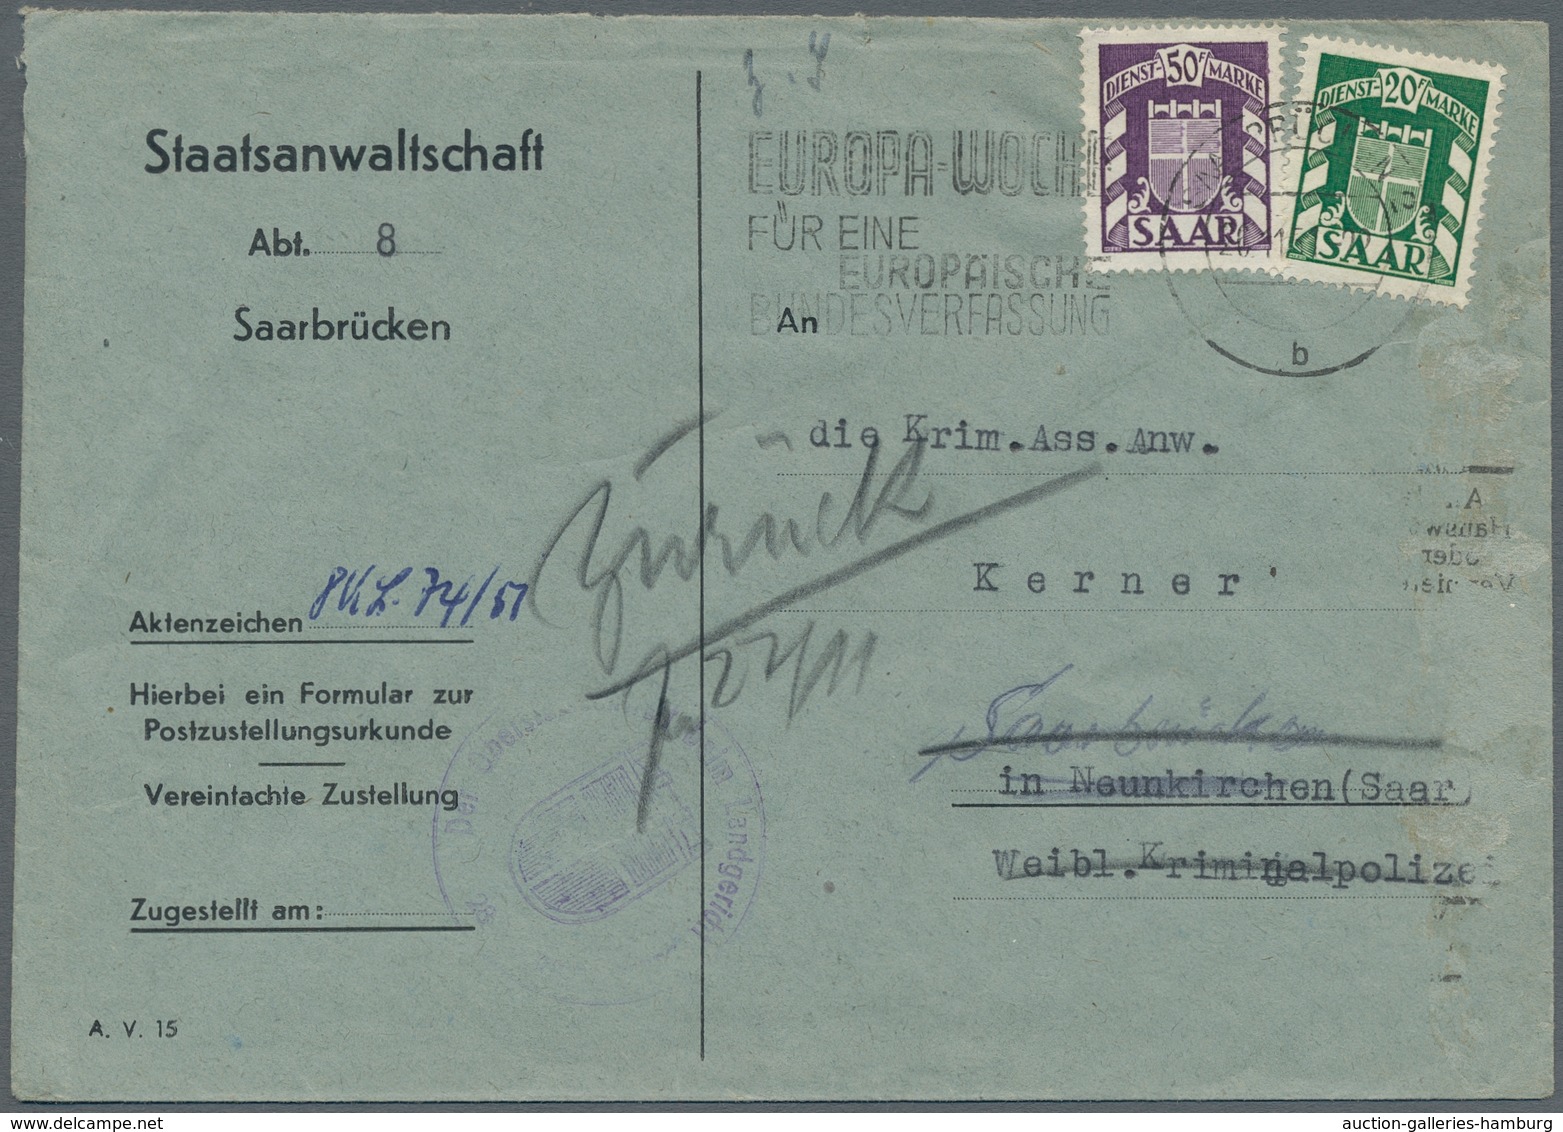 Saarland (1947/56) - Dienstmarken: 1950-51 (ca.), neun Belege, meist 20+50Fr frankiert, alle mit Mas